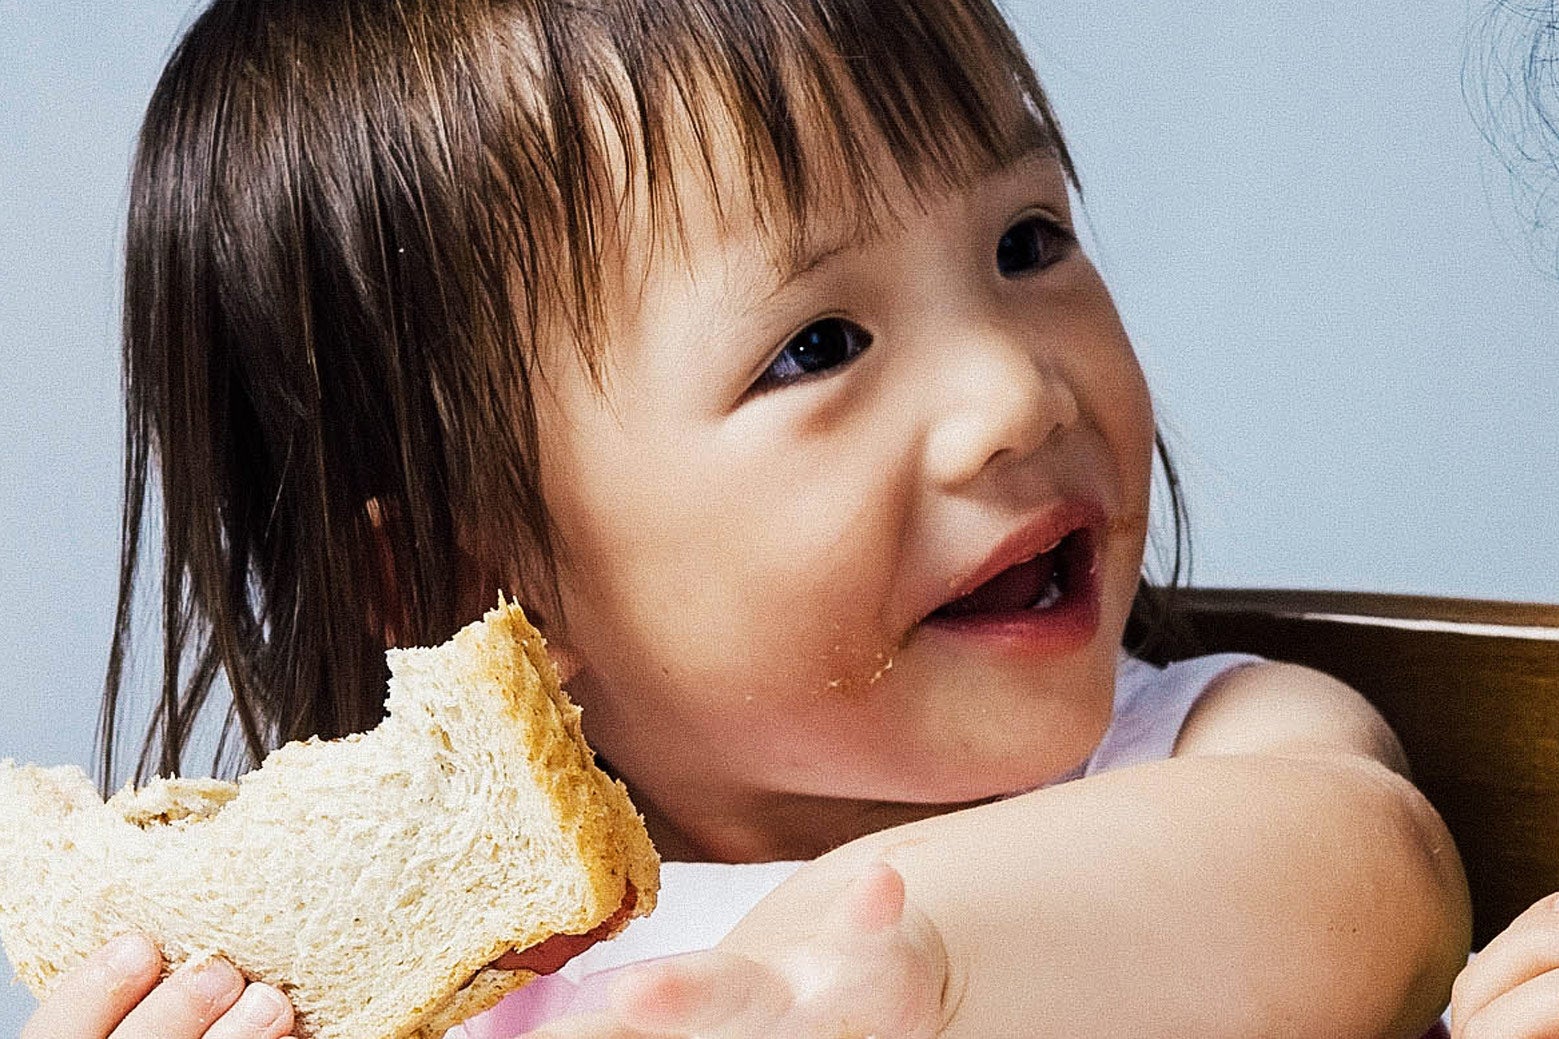 Toddler eating a peanut butter sandwich.